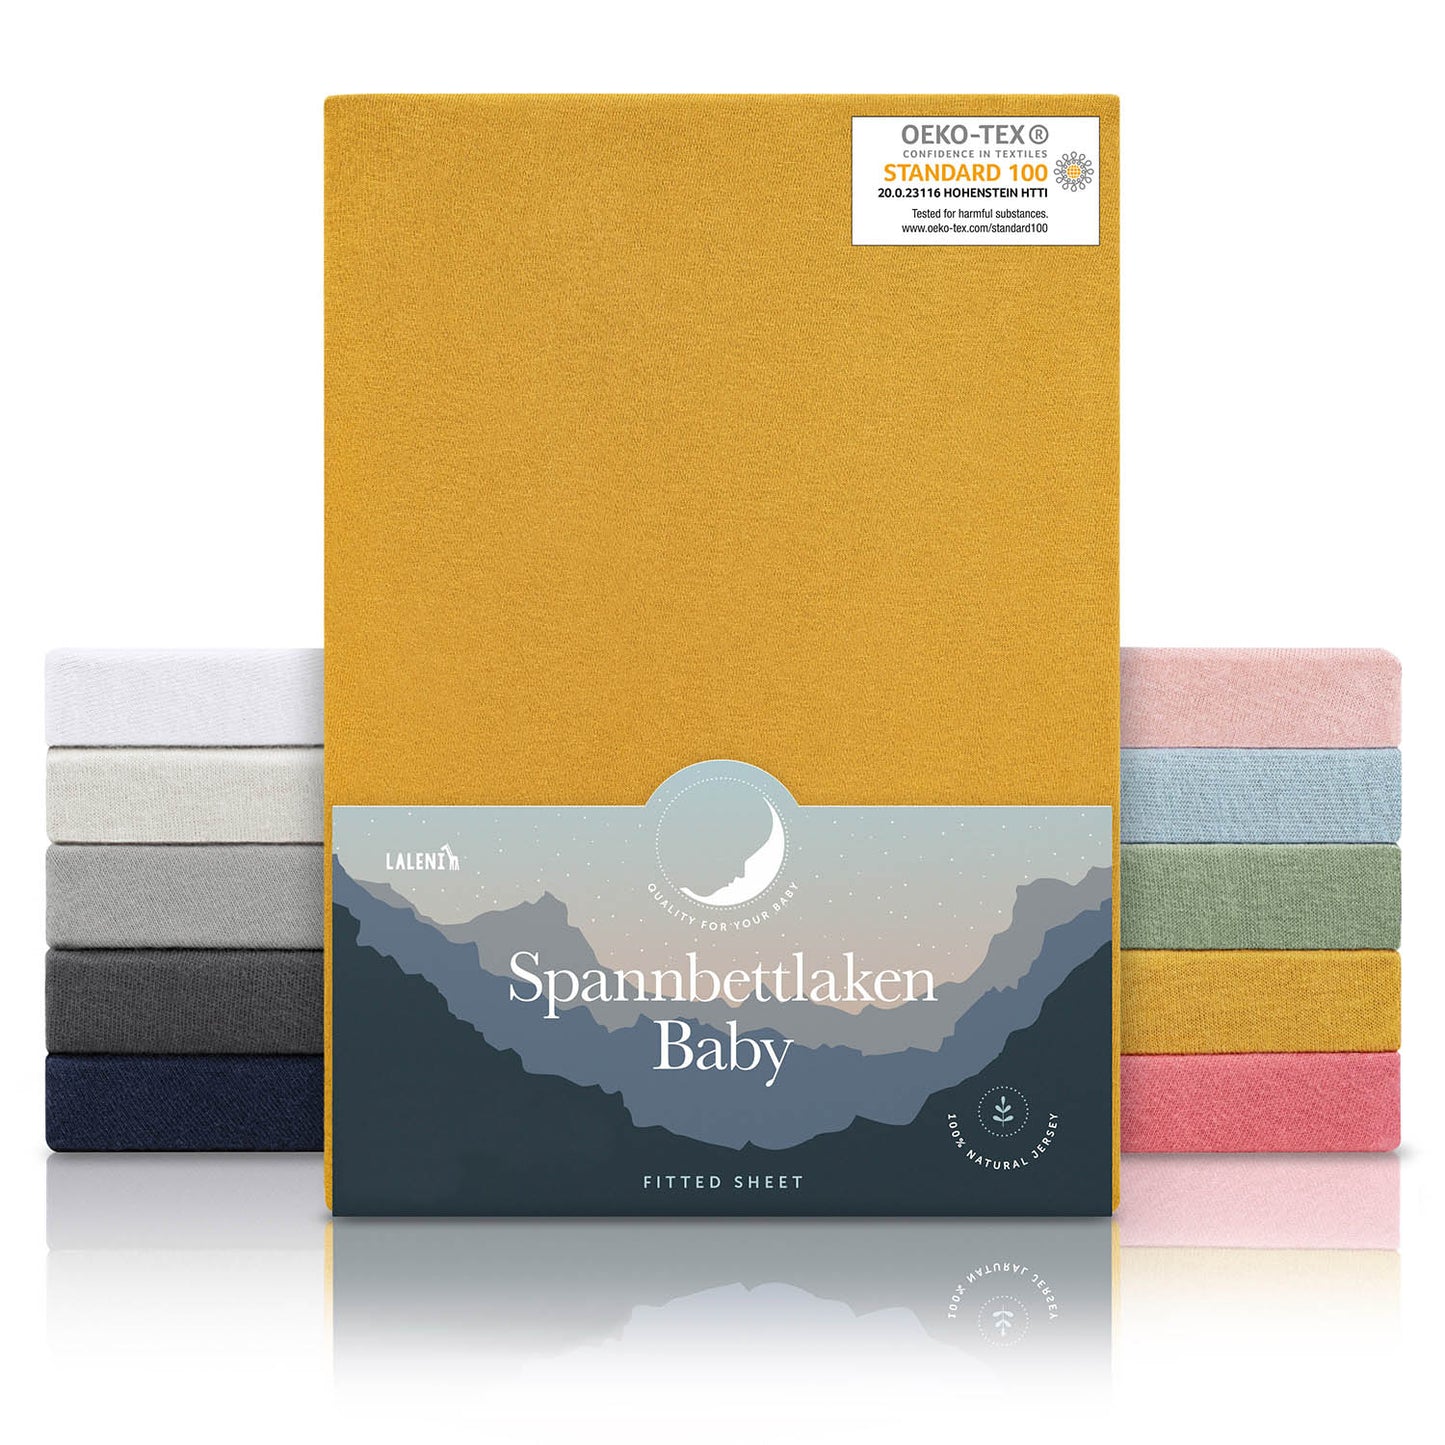 Verpackung von gelben Spannbettlaken für Babys mit Öko-Tex Standard 100 Siegel präsentiert neben einem Stapel Laken in verschiedenen Farben.